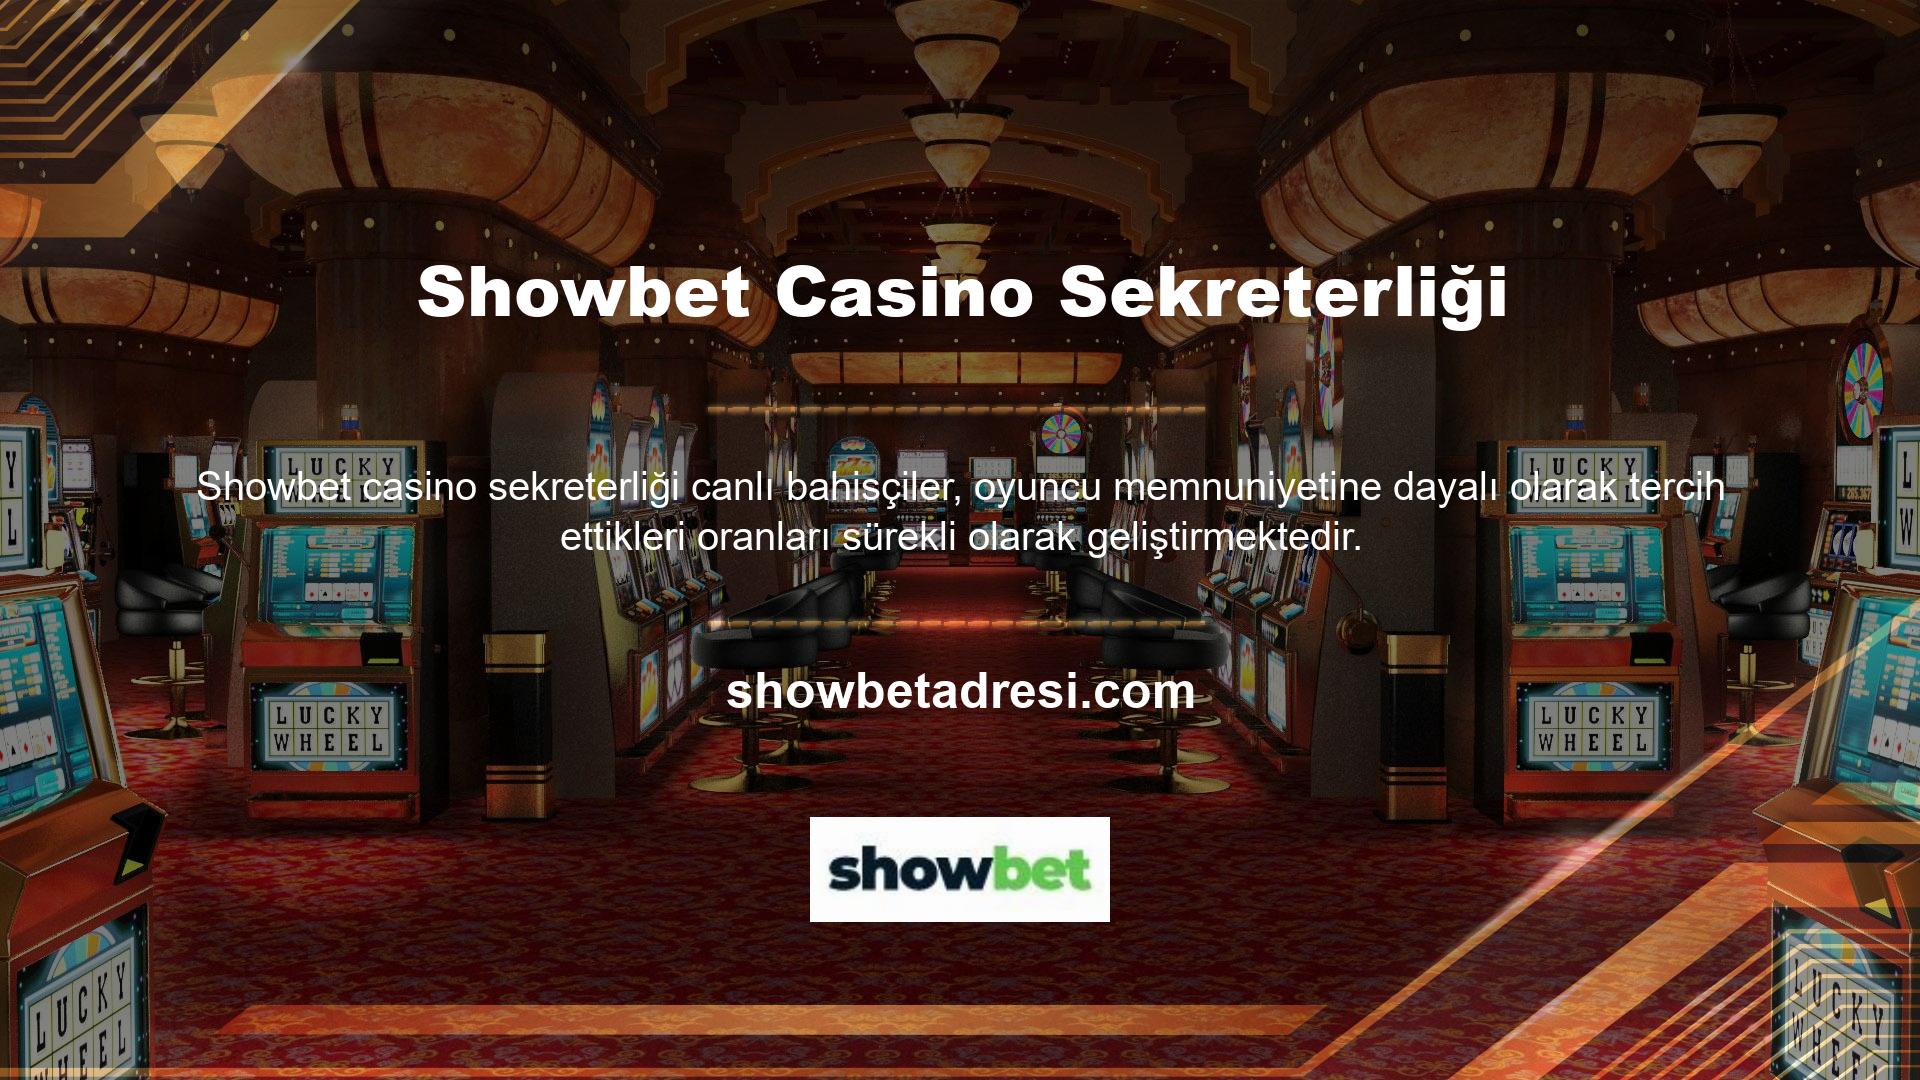 Showbet casino sitesinin casino bölümü, eğlenerek ve bonuslar ekleyerek para kazanmanın oldukça kolay olması nedeniyle oldukça ilgi görmektedir